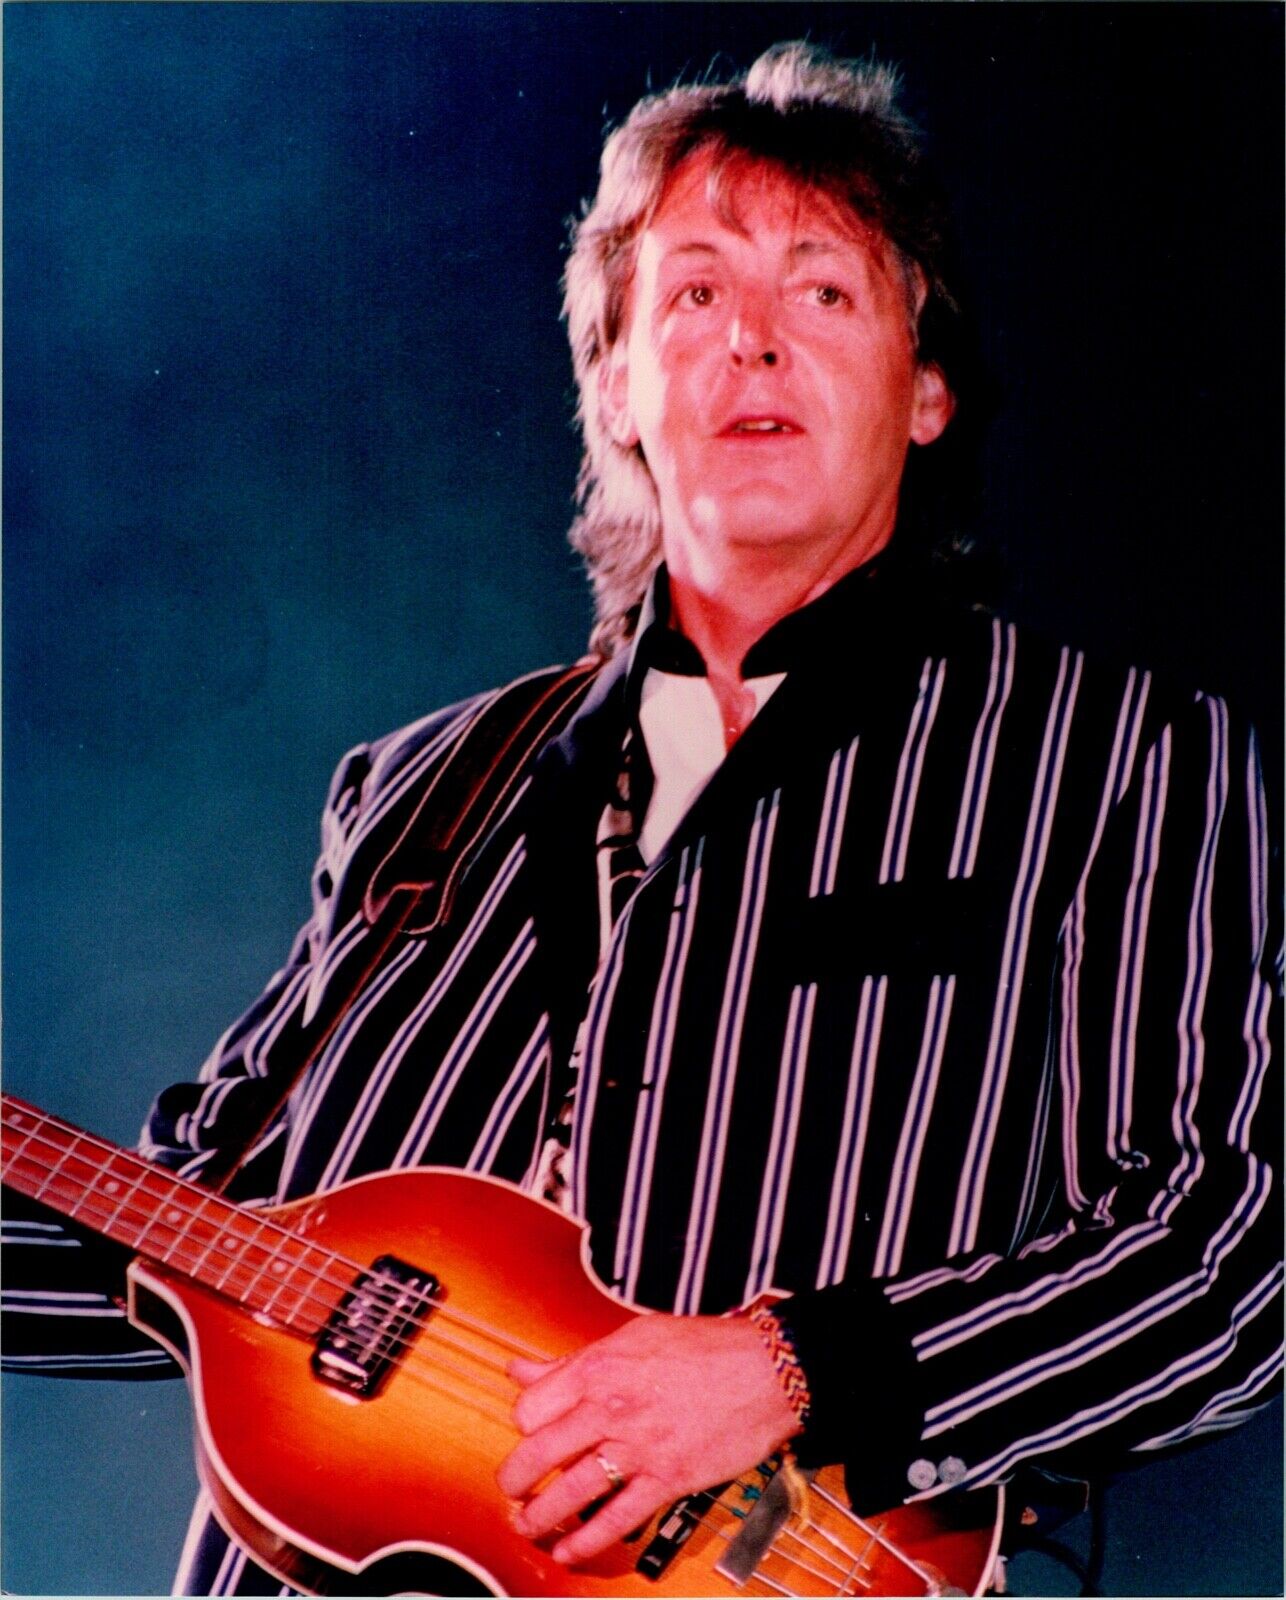 Paul McCartney The Beatles Bass Player Vintage Publicity 8x10 Color Photo A